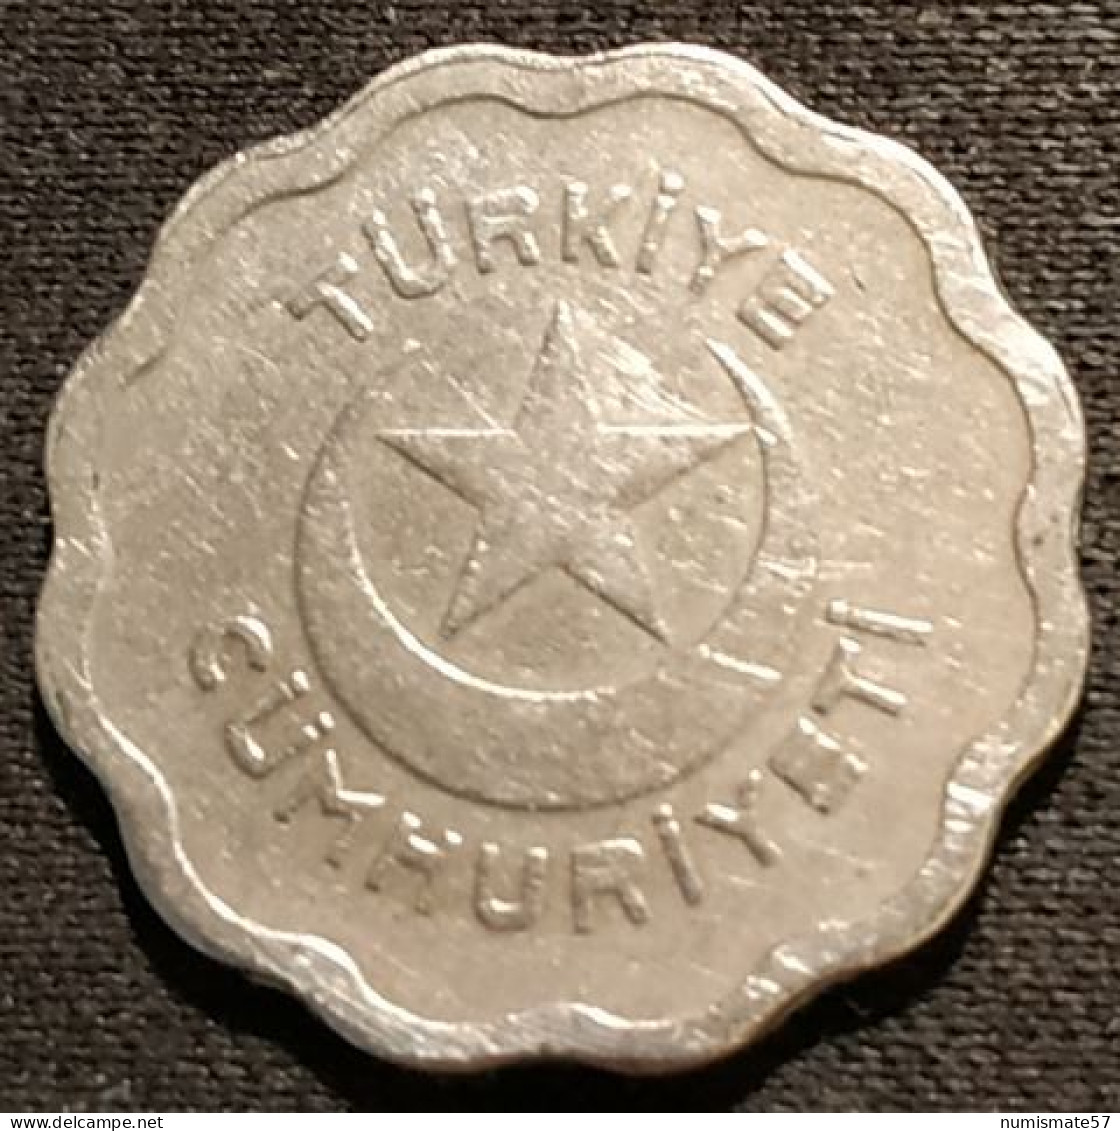 TURQUIE - TURKEY - 1 KURUS 1939 - KM 867 - Türkei